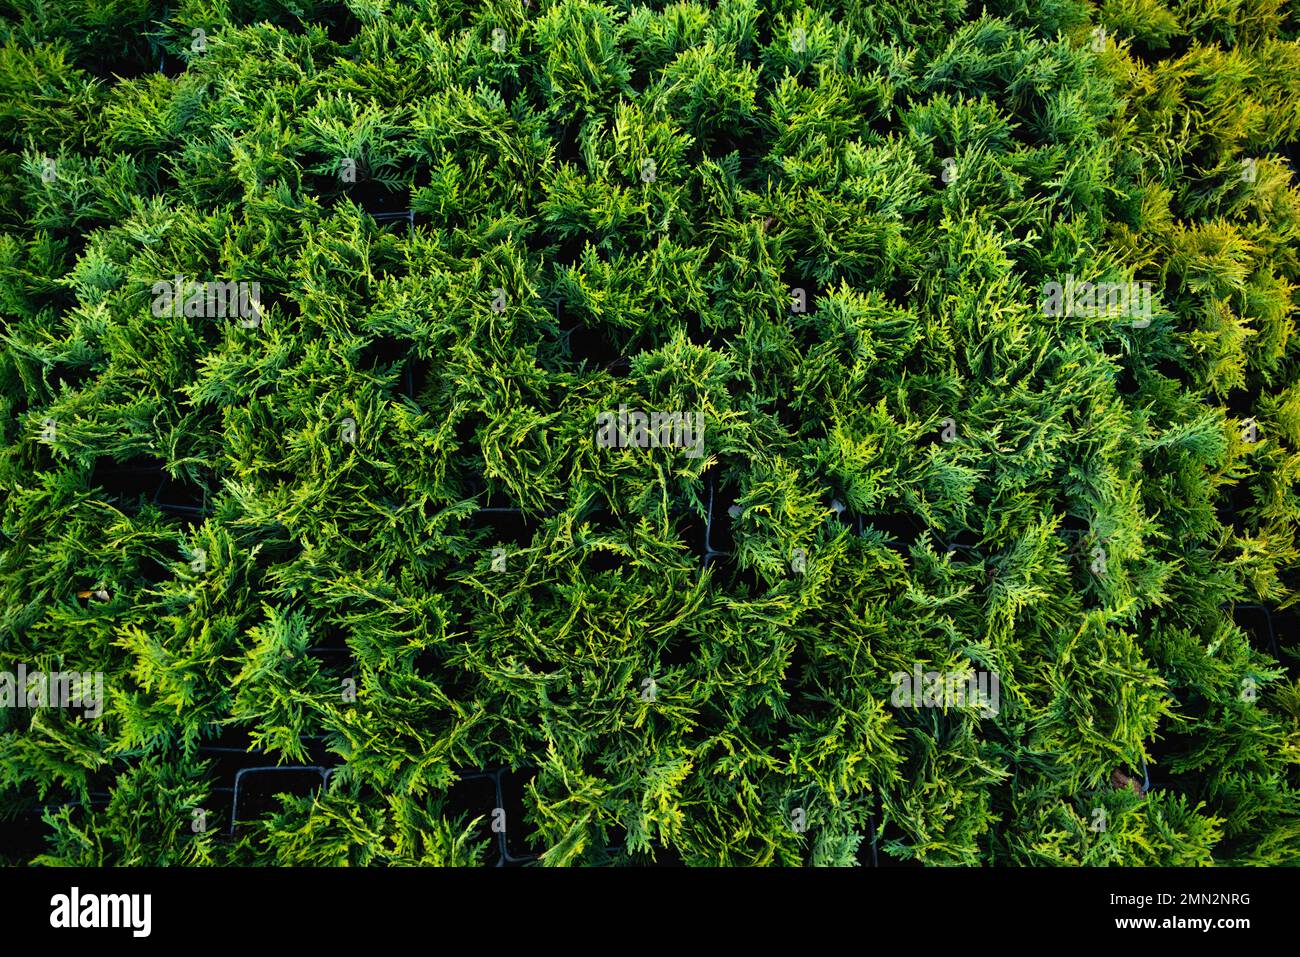 Nahaufnahme von grünen Thuja-Ästen. Grünpflanzen im Hintergrund. Stockfoto